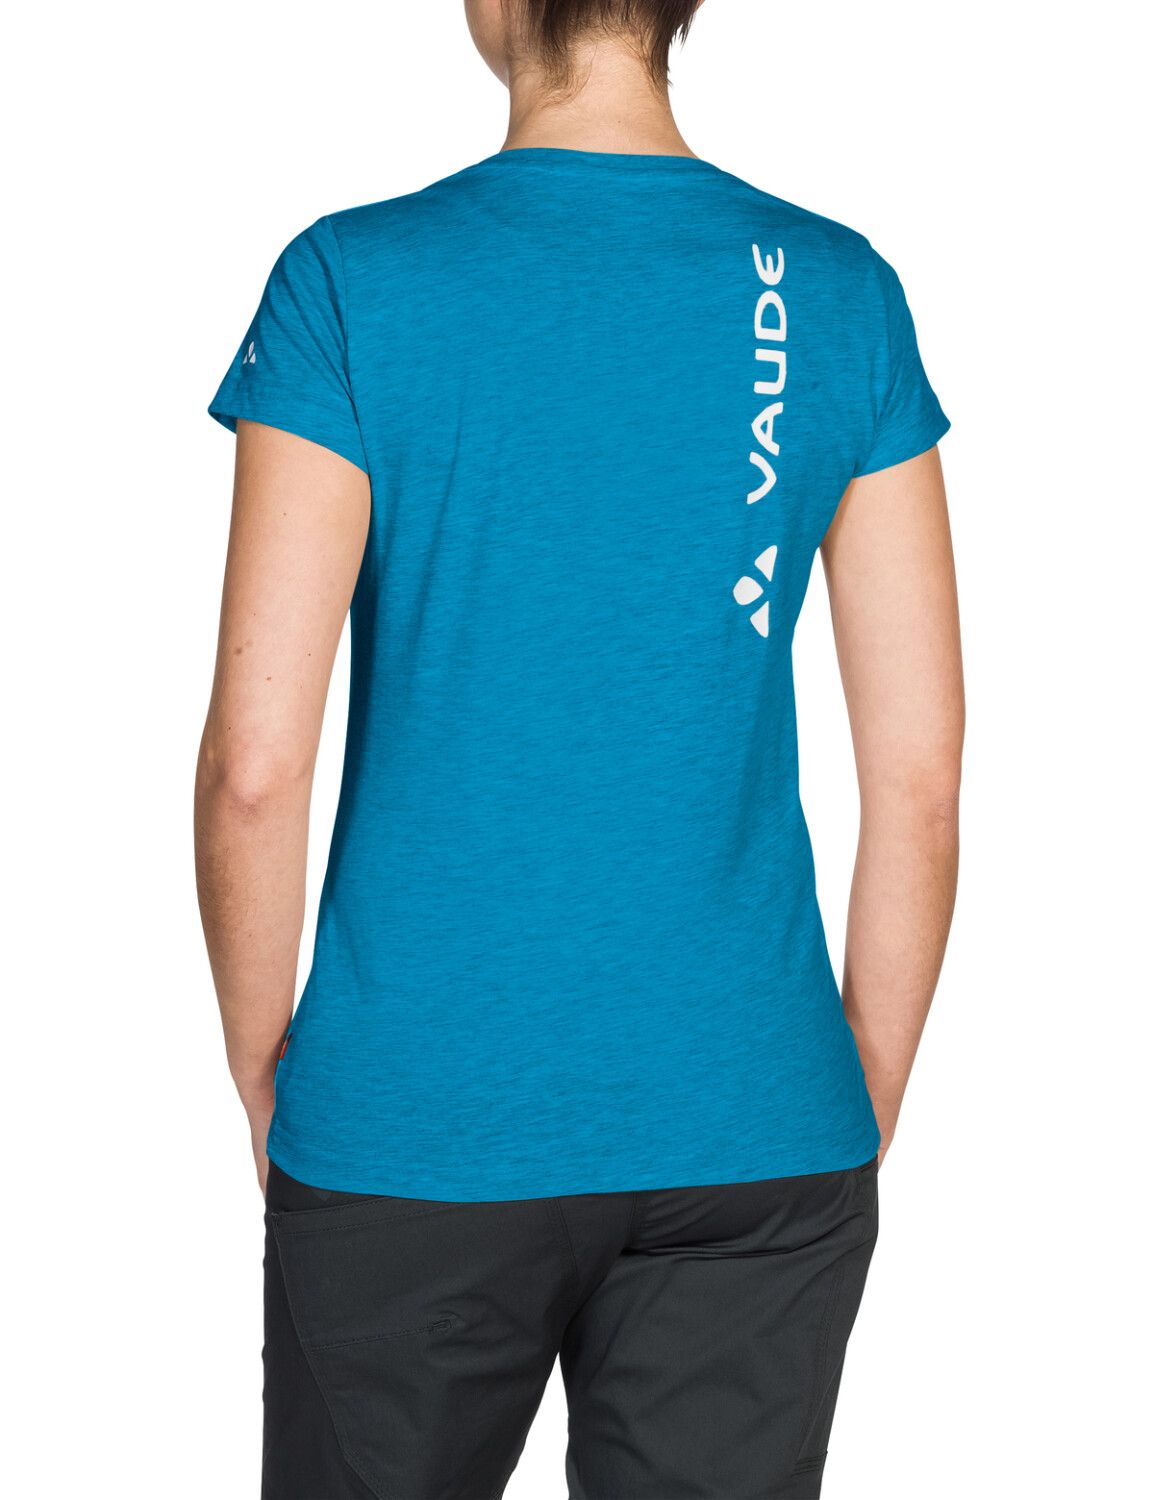 VAUDE Women's Brand Shirt (Bild 29)